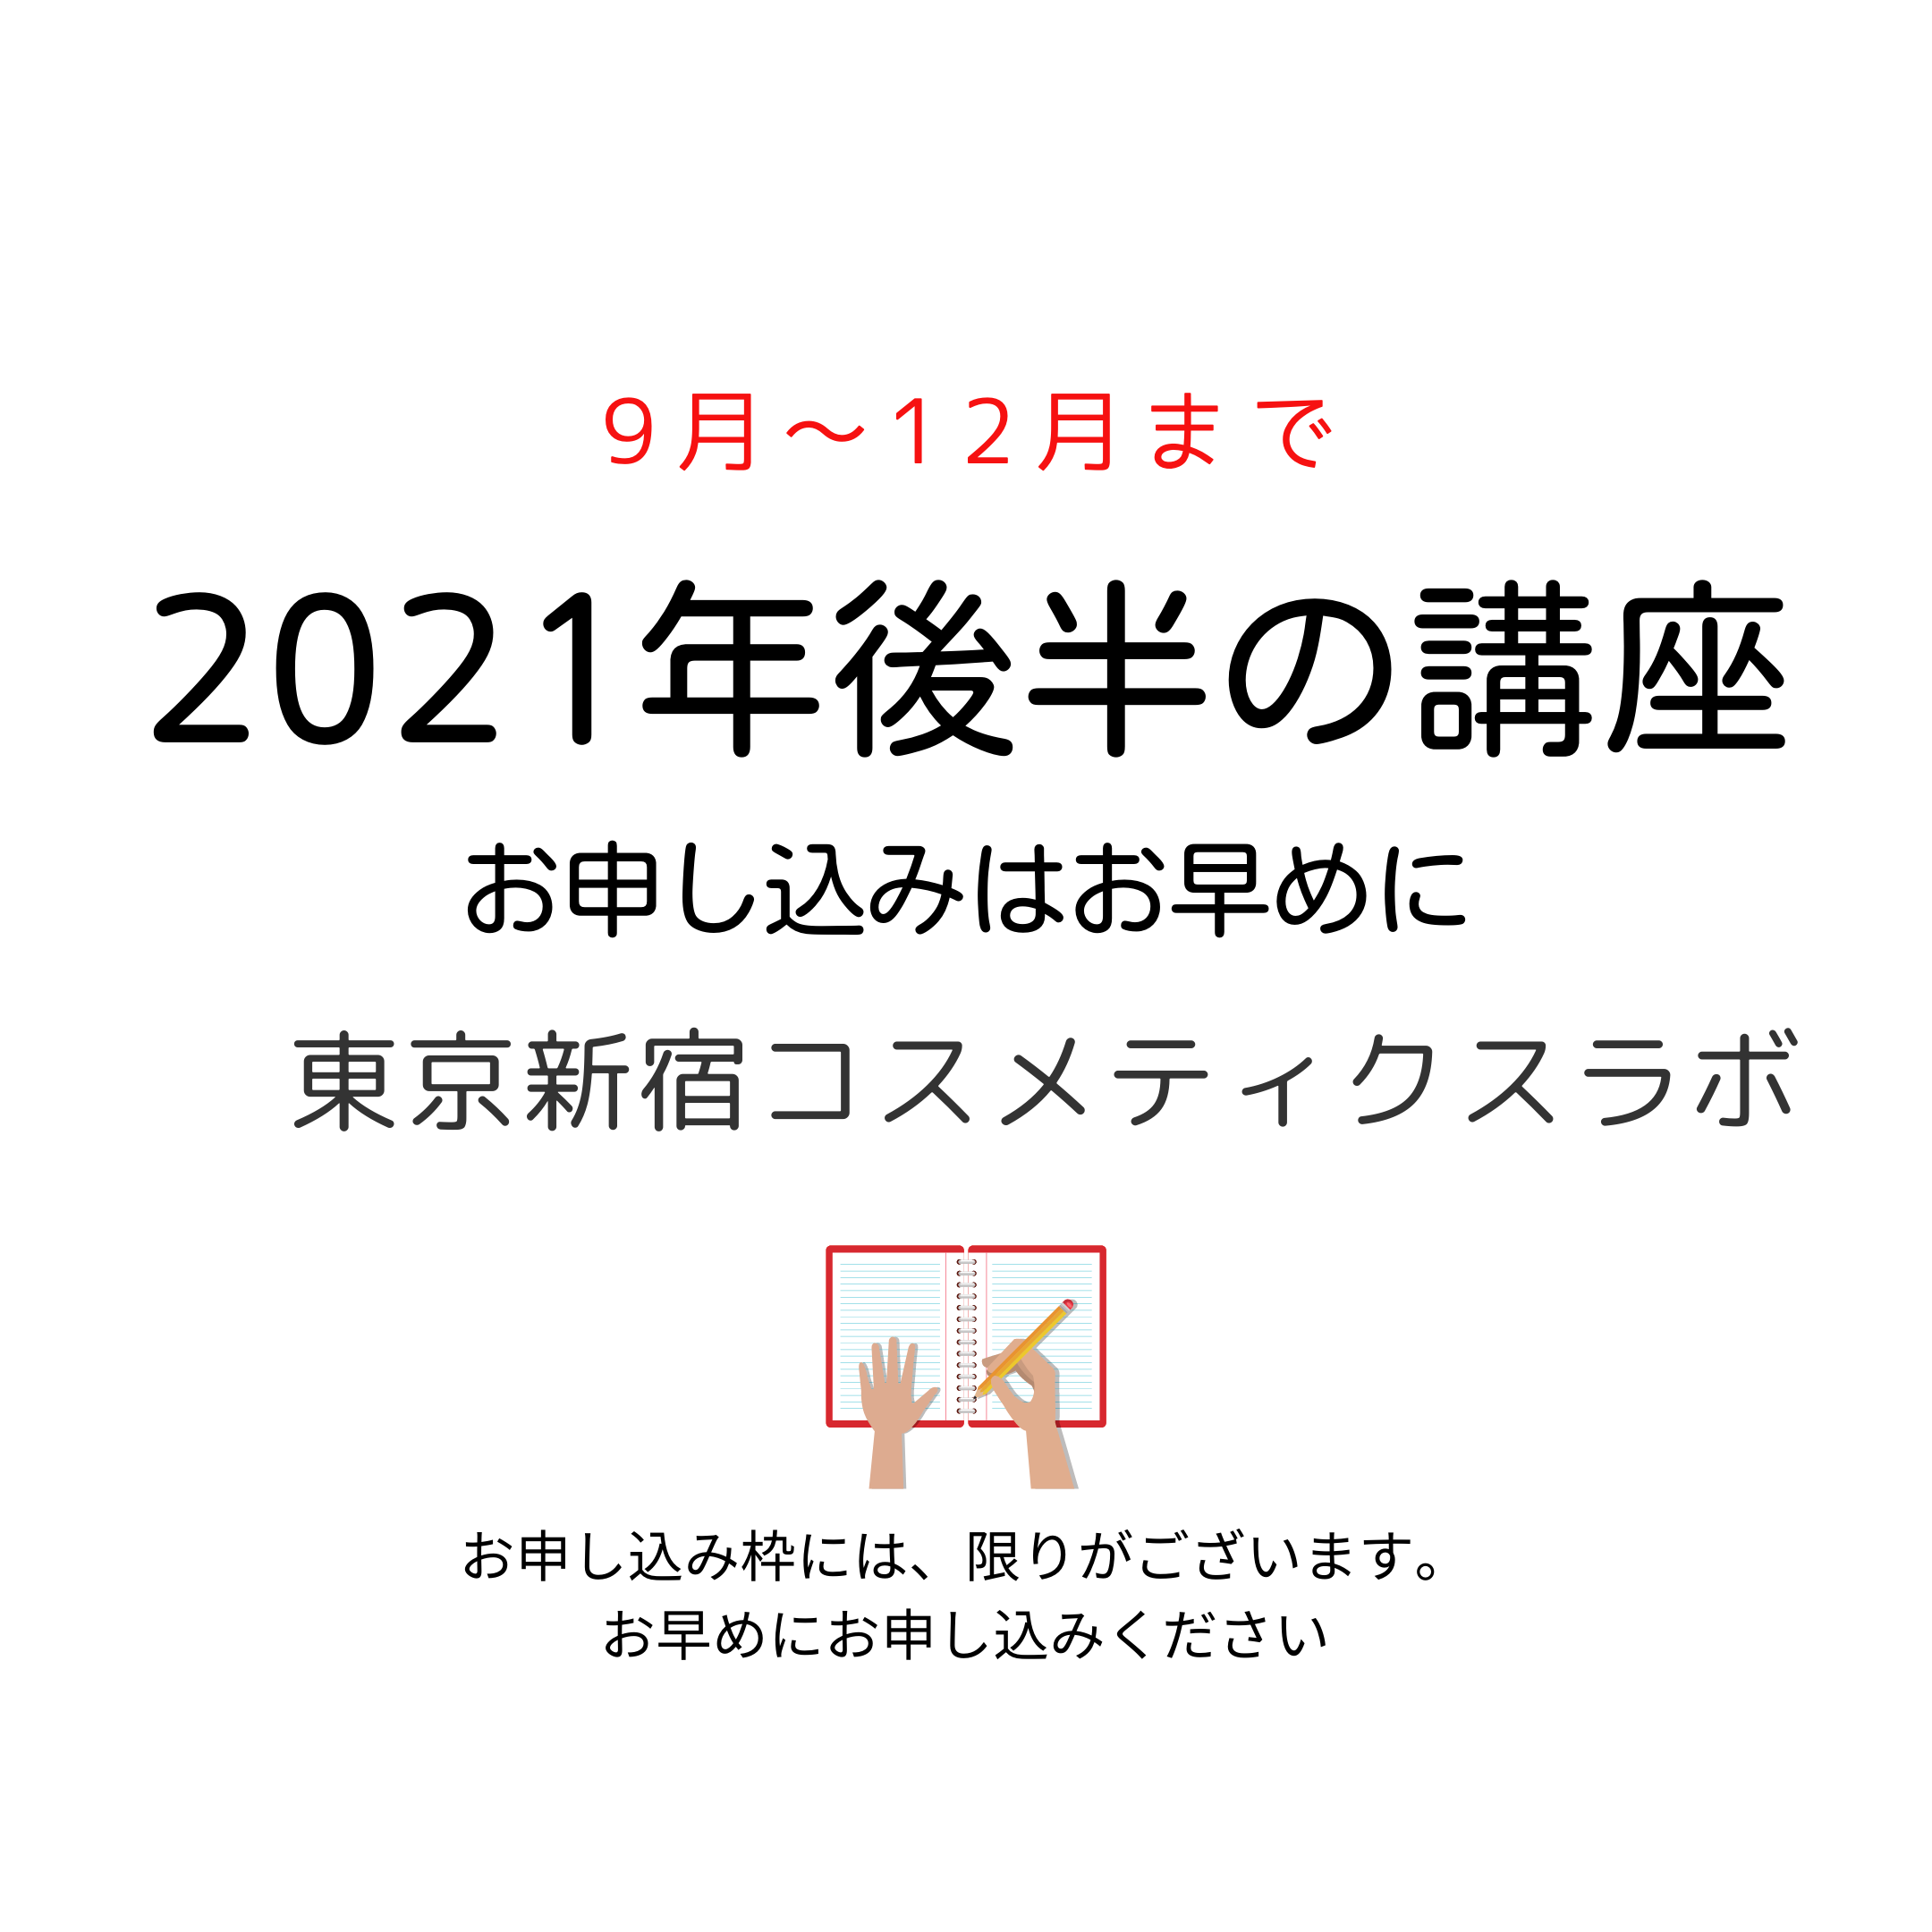 2021年後半の日本化粧品検定対策講座、検定試験スケジュールを発表しました。